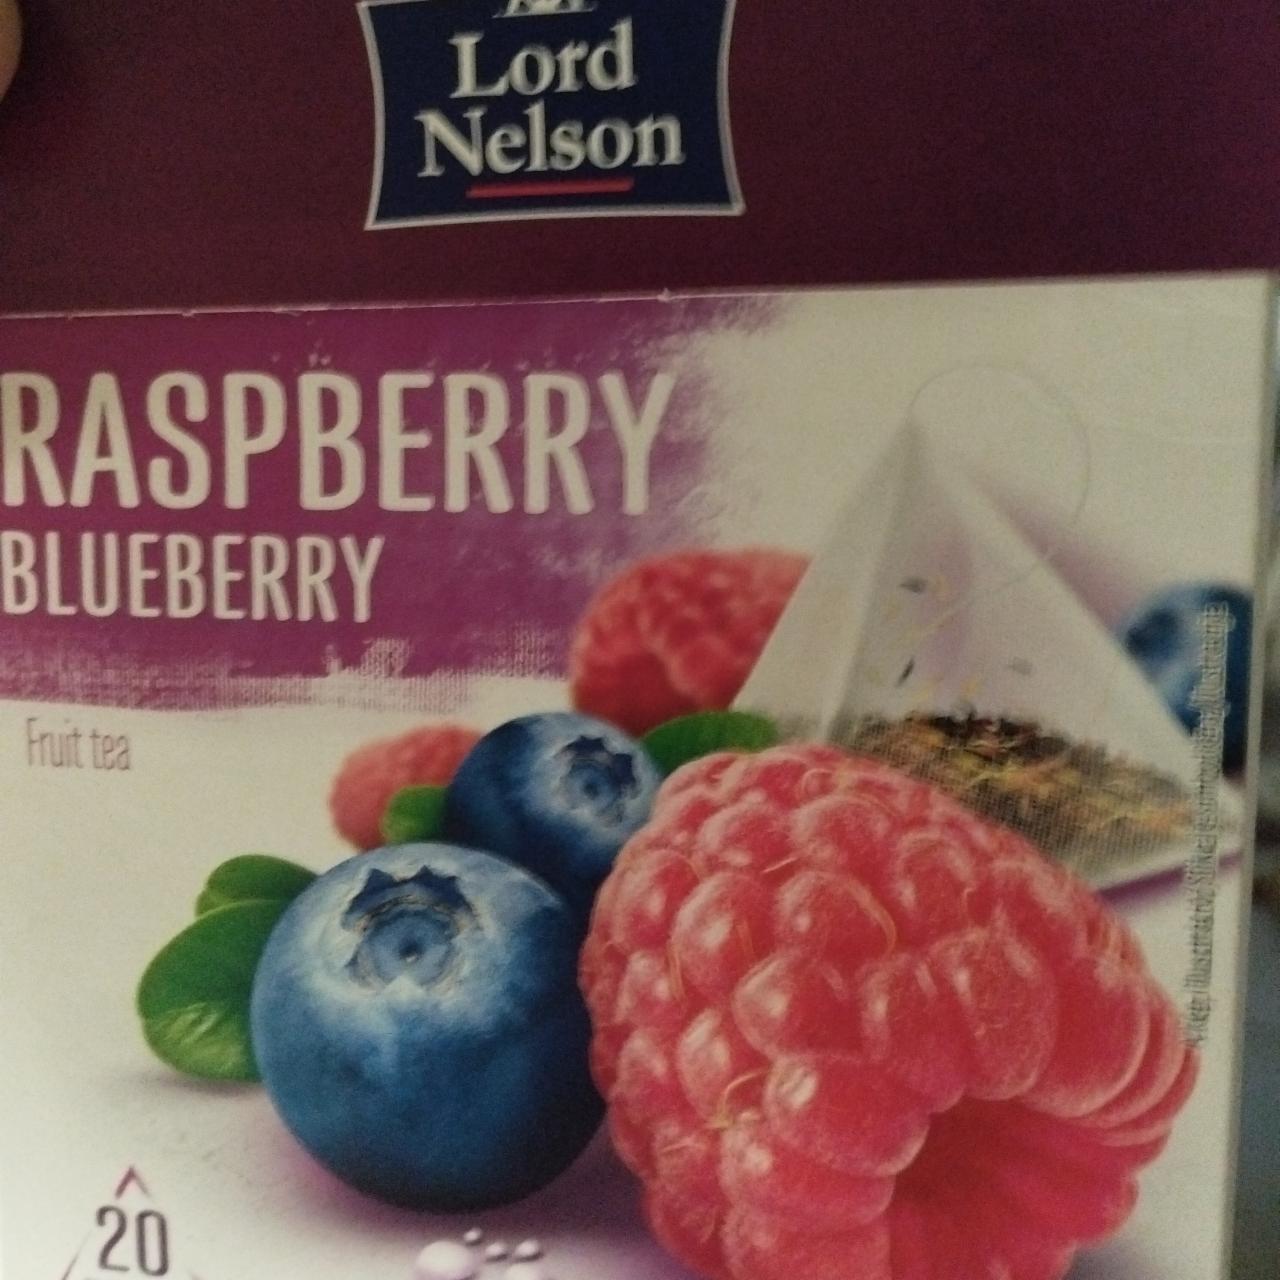 Képek - Raspberry, blueberry fruit tea Lord Nelson